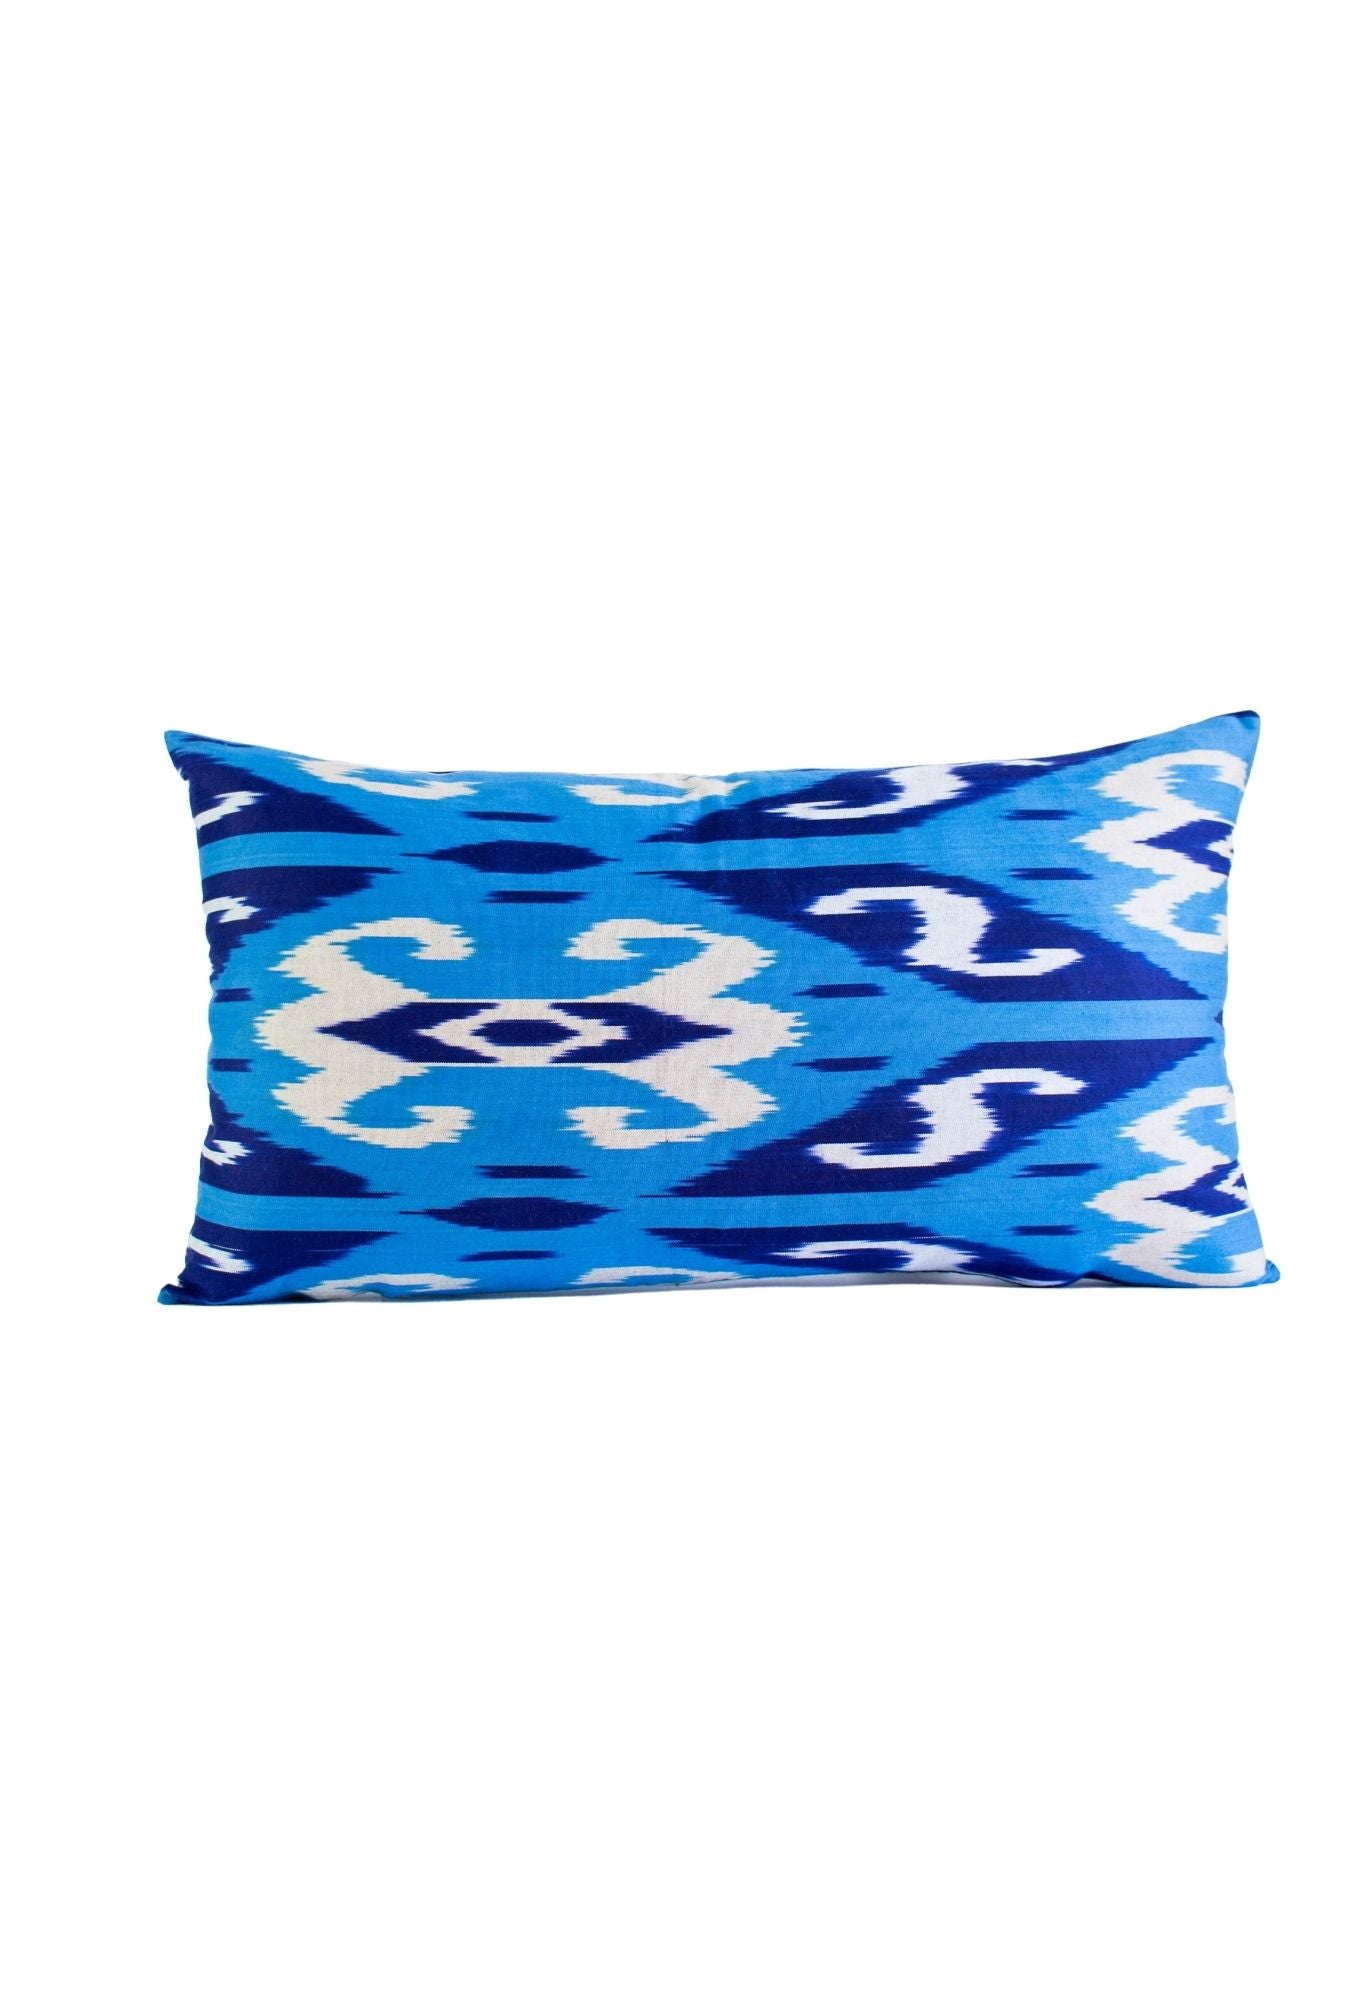 Ikat Pillows Blue Set of 2